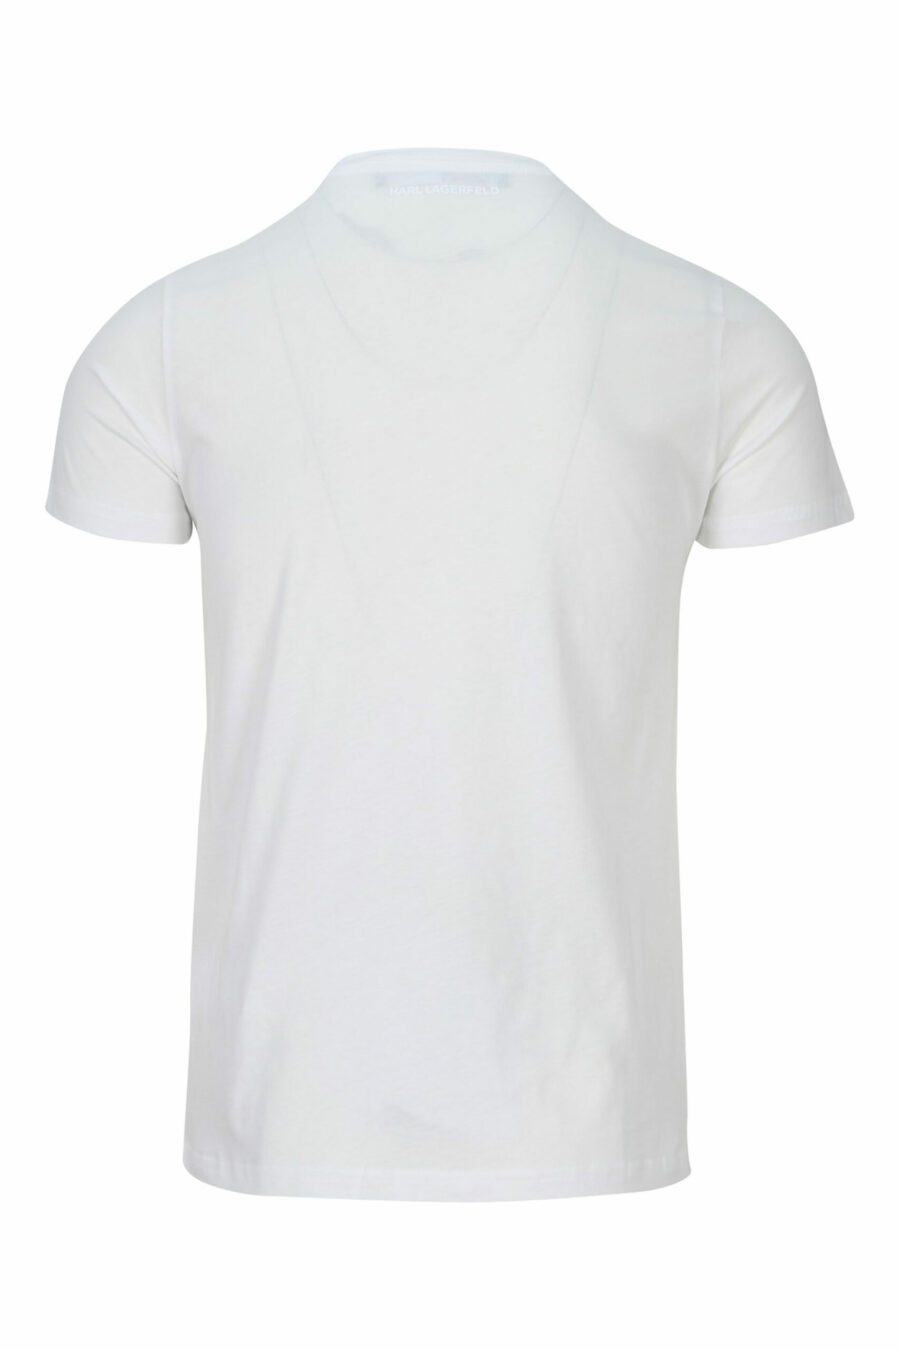 Weißes Rundhals-T-Shirt mit "karl" Maxilogo - 4062225535237 1 skaliert